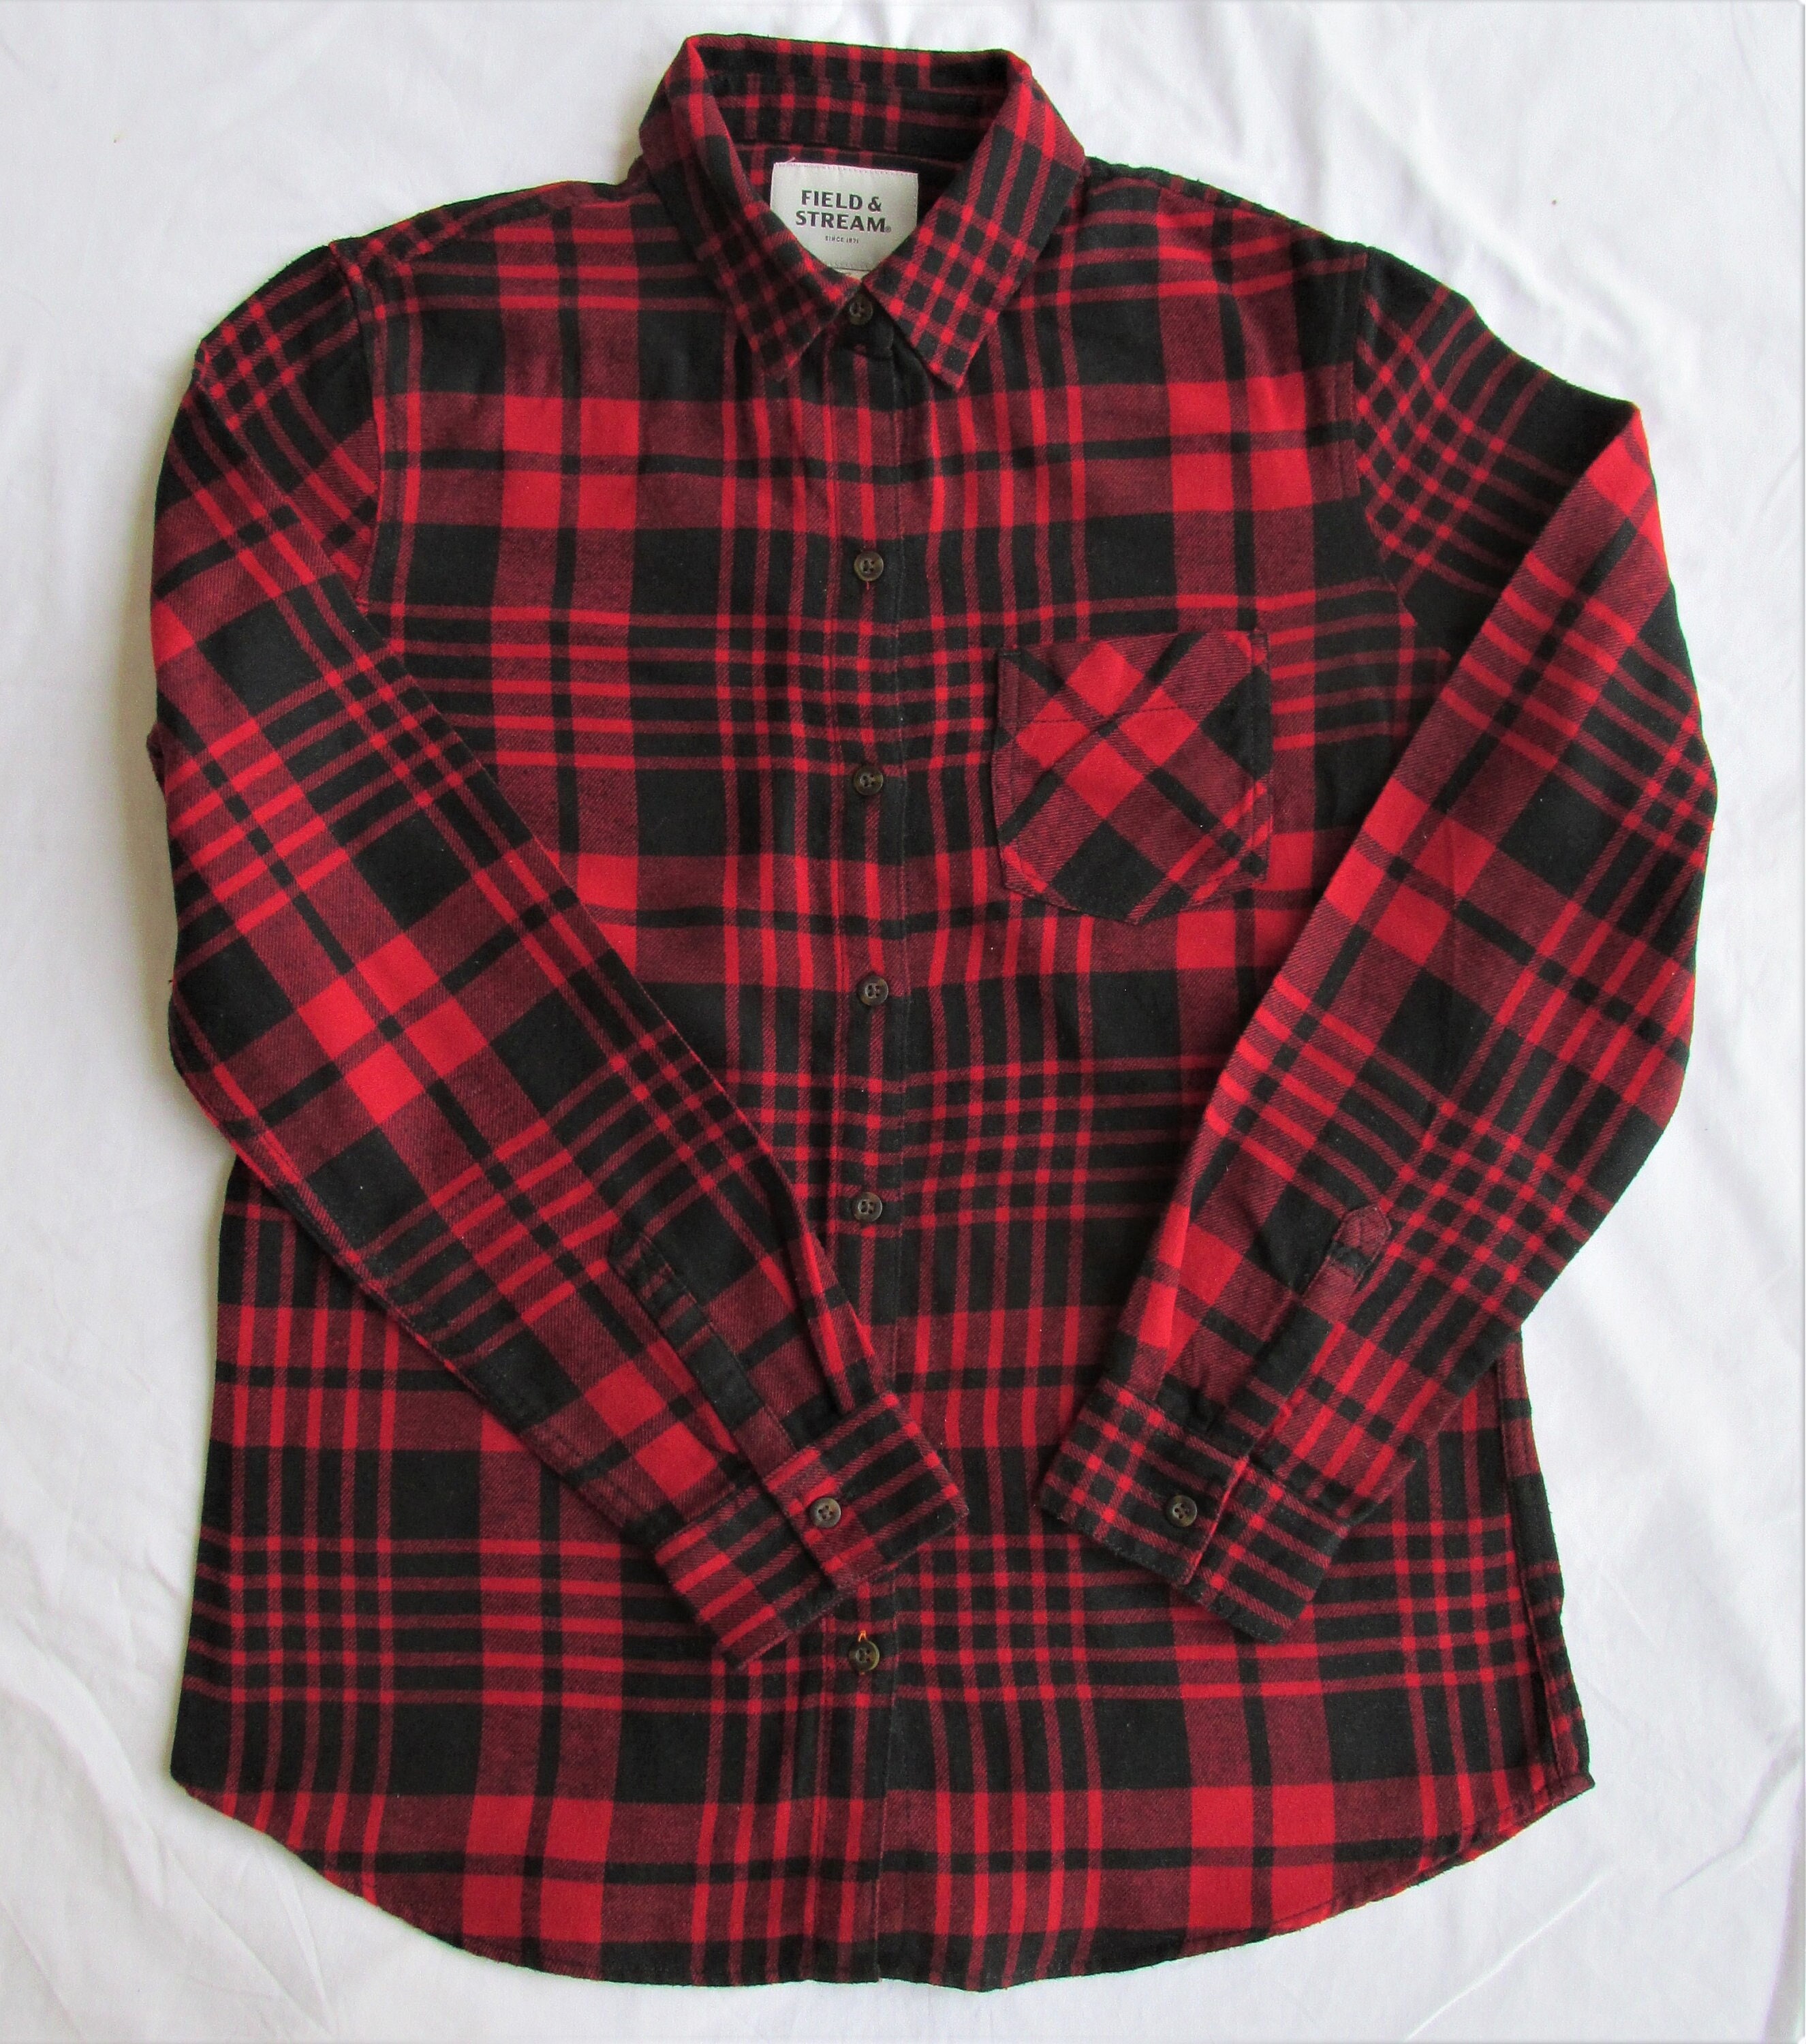 Field & Stream Women's Cotton Flannel Shirt Size Medium -  Finland